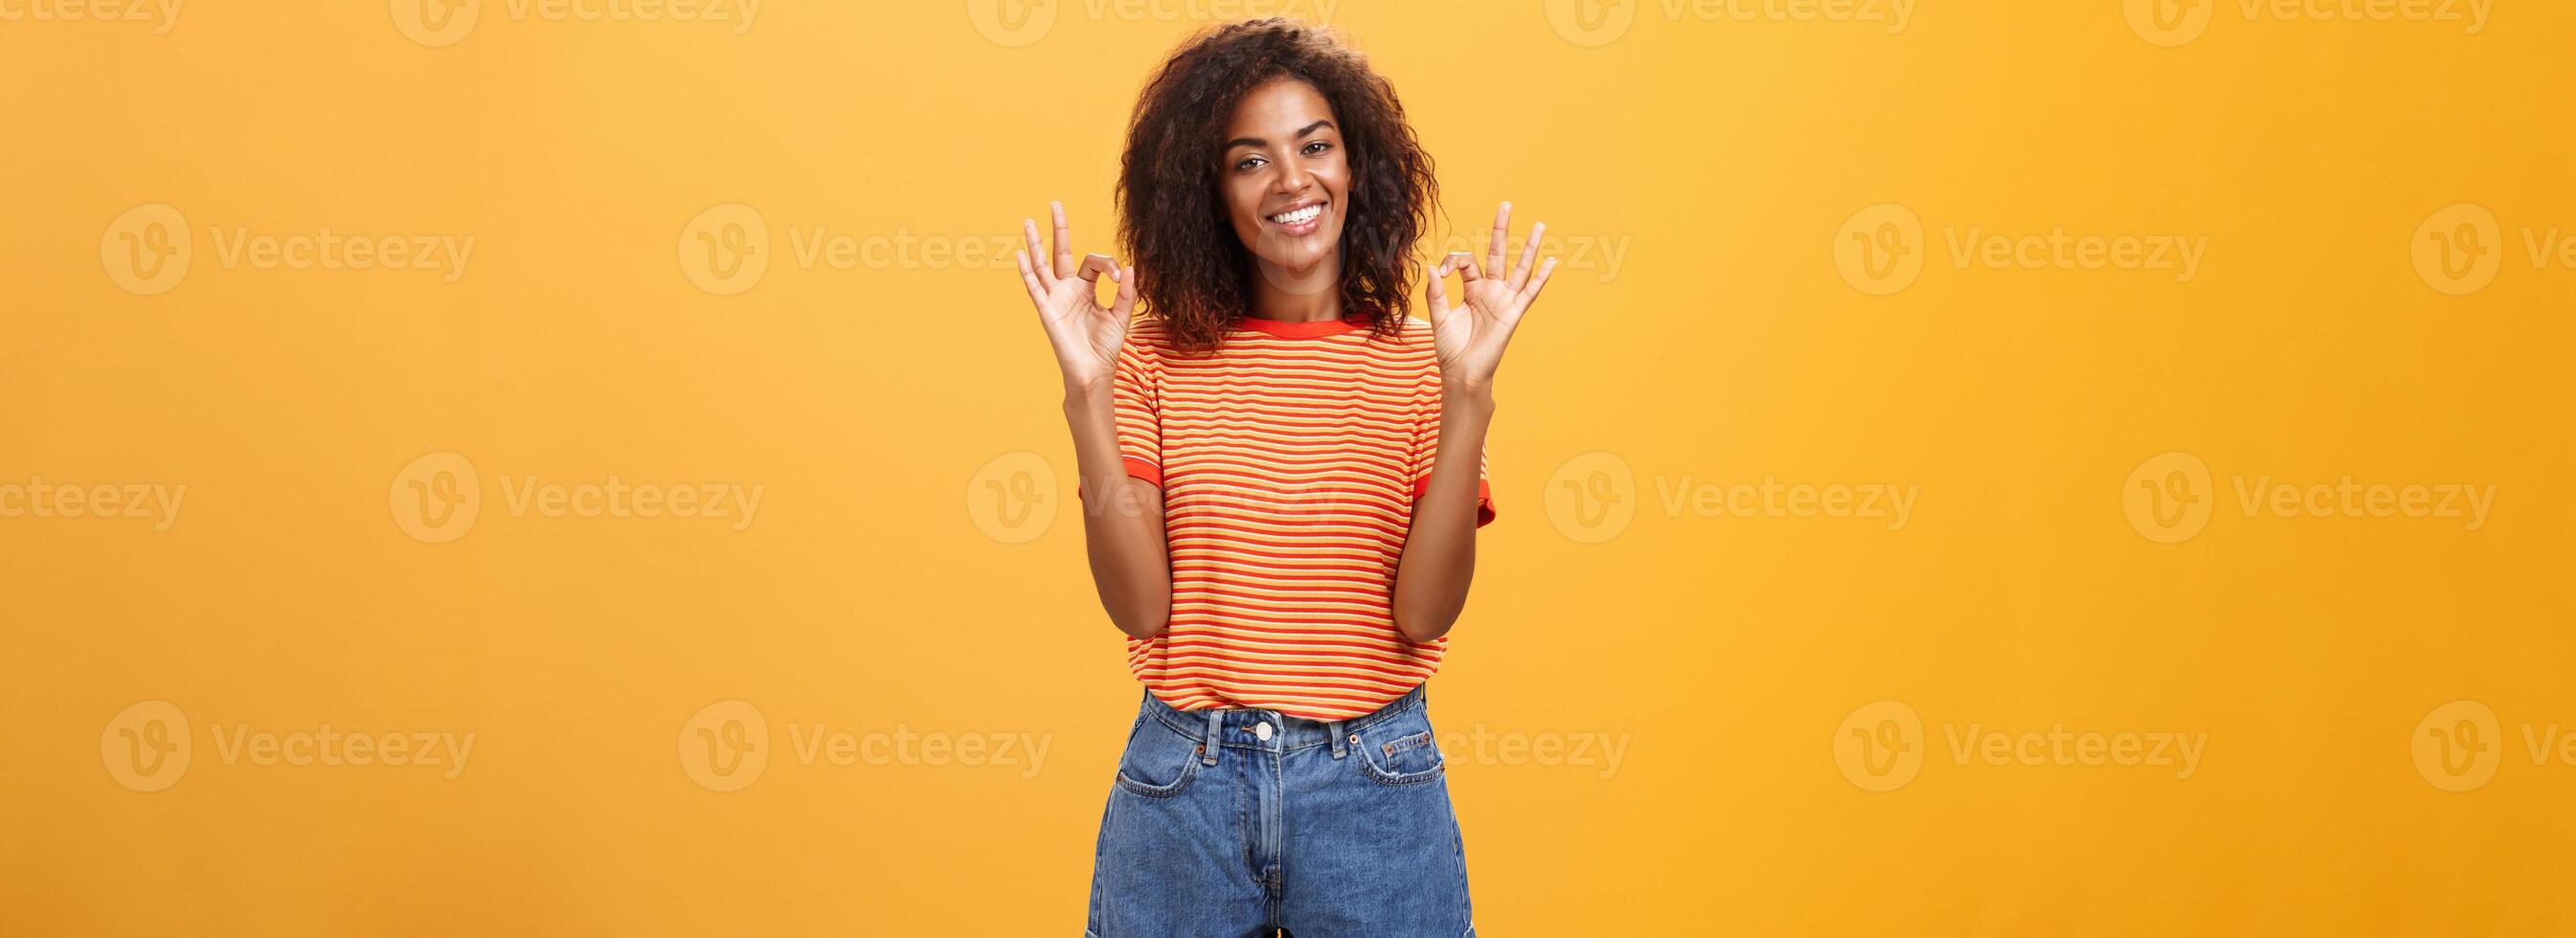 kyla attraktiv nöjd afrikansk amerikan kvinna kund plockning ny utrusta varelse förtjust och nöjd med Häftigt personal höjning händer i Okej eller grymt bra gest leende lyckligt över orange vägg foto